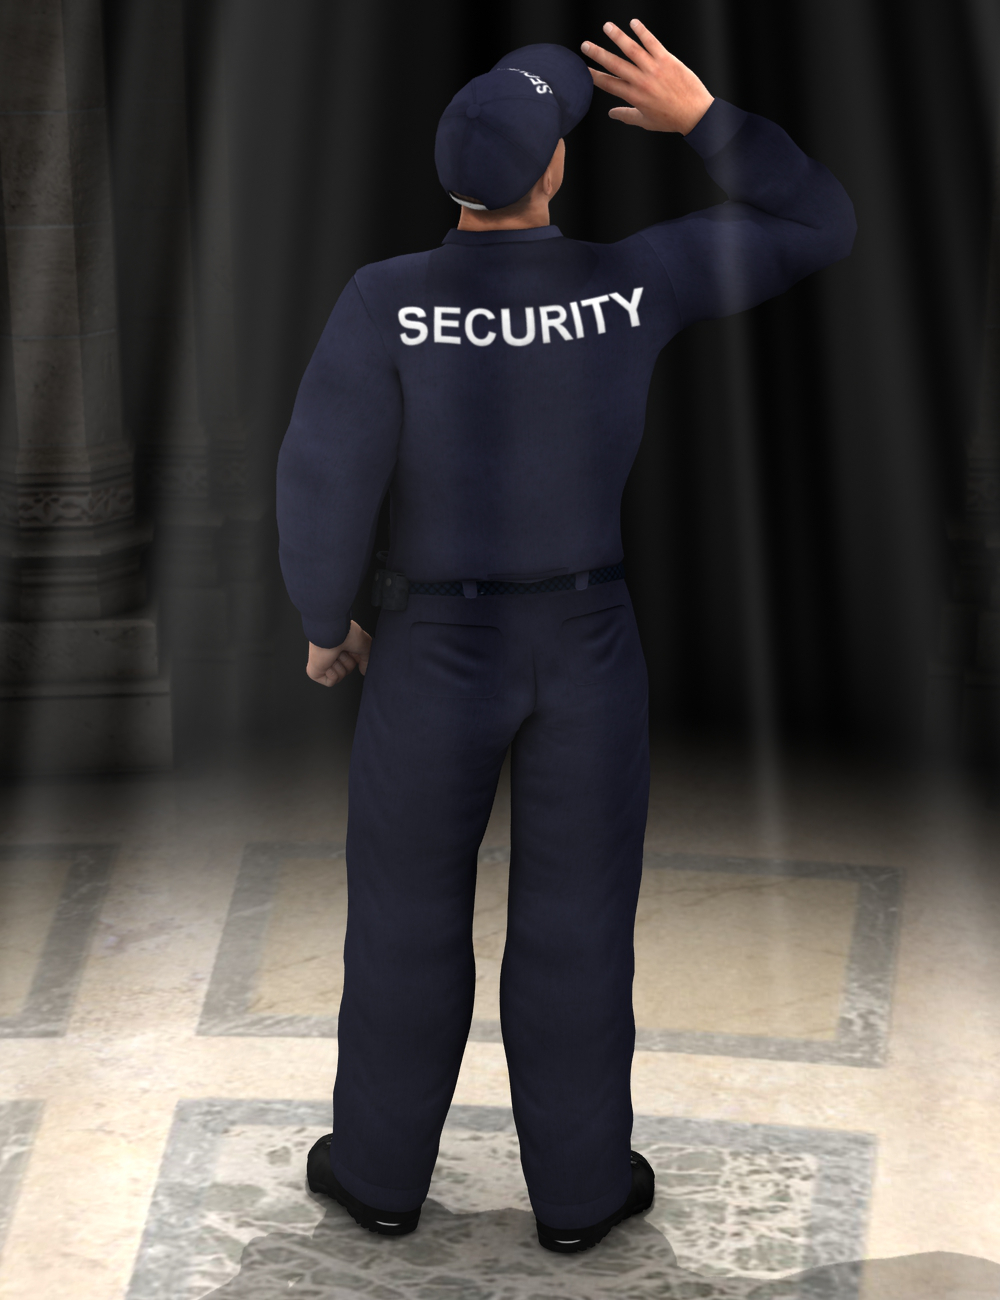 Security! Genesis 2 Male(s) by: Sickleyield, 3D Models by Daz 3D